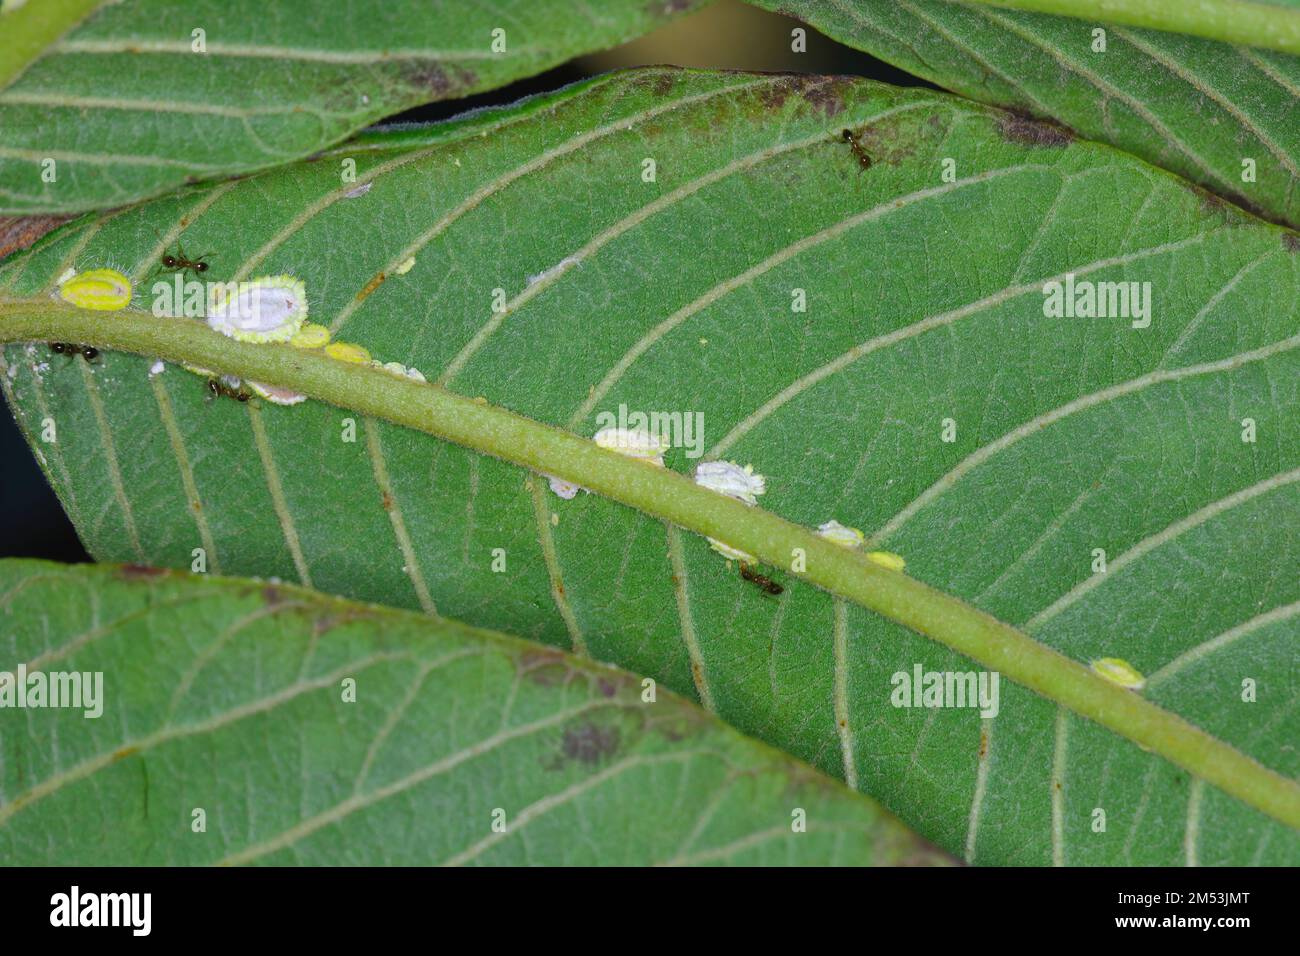 La escala de Seychelles, Icerya seychellarum (Hemiptera: Monophlebidae) es la peligrosa plaga de los árboles de aguacate, mango y cítricos en la cuenca mediterránea. Foto de stock